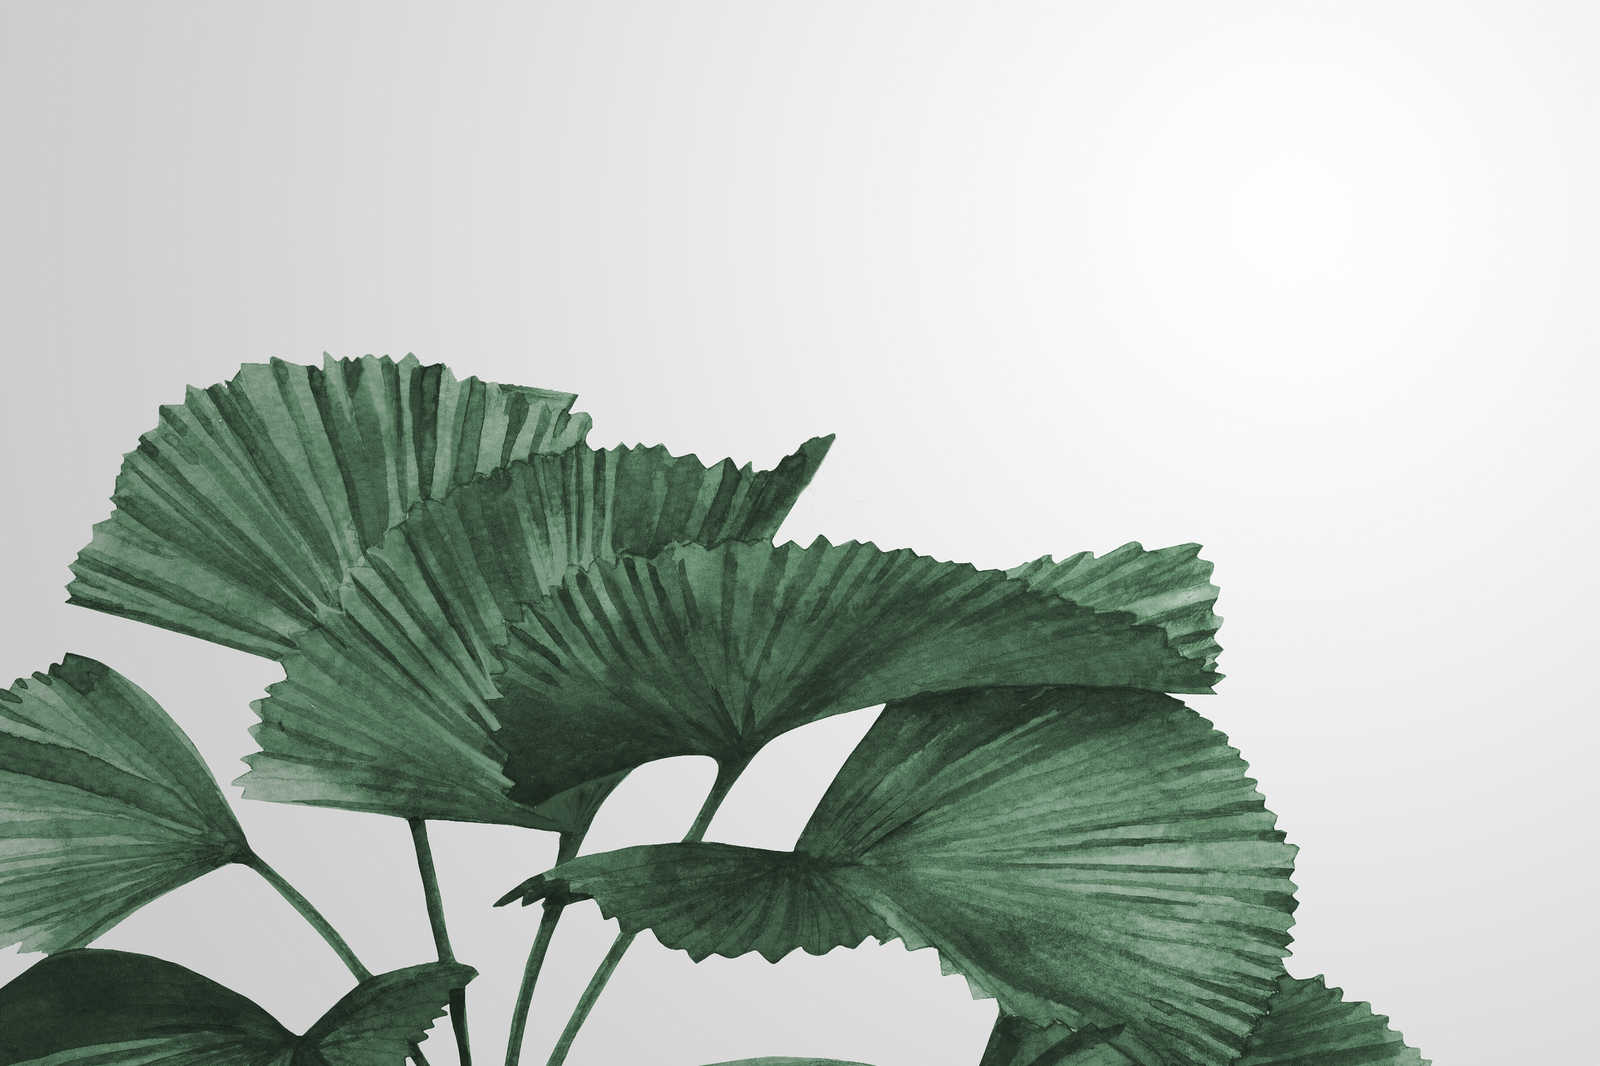             Leinwandbild mit großen Blättern einer Strahlenpalme – 0,90 m x 0,60 m
        